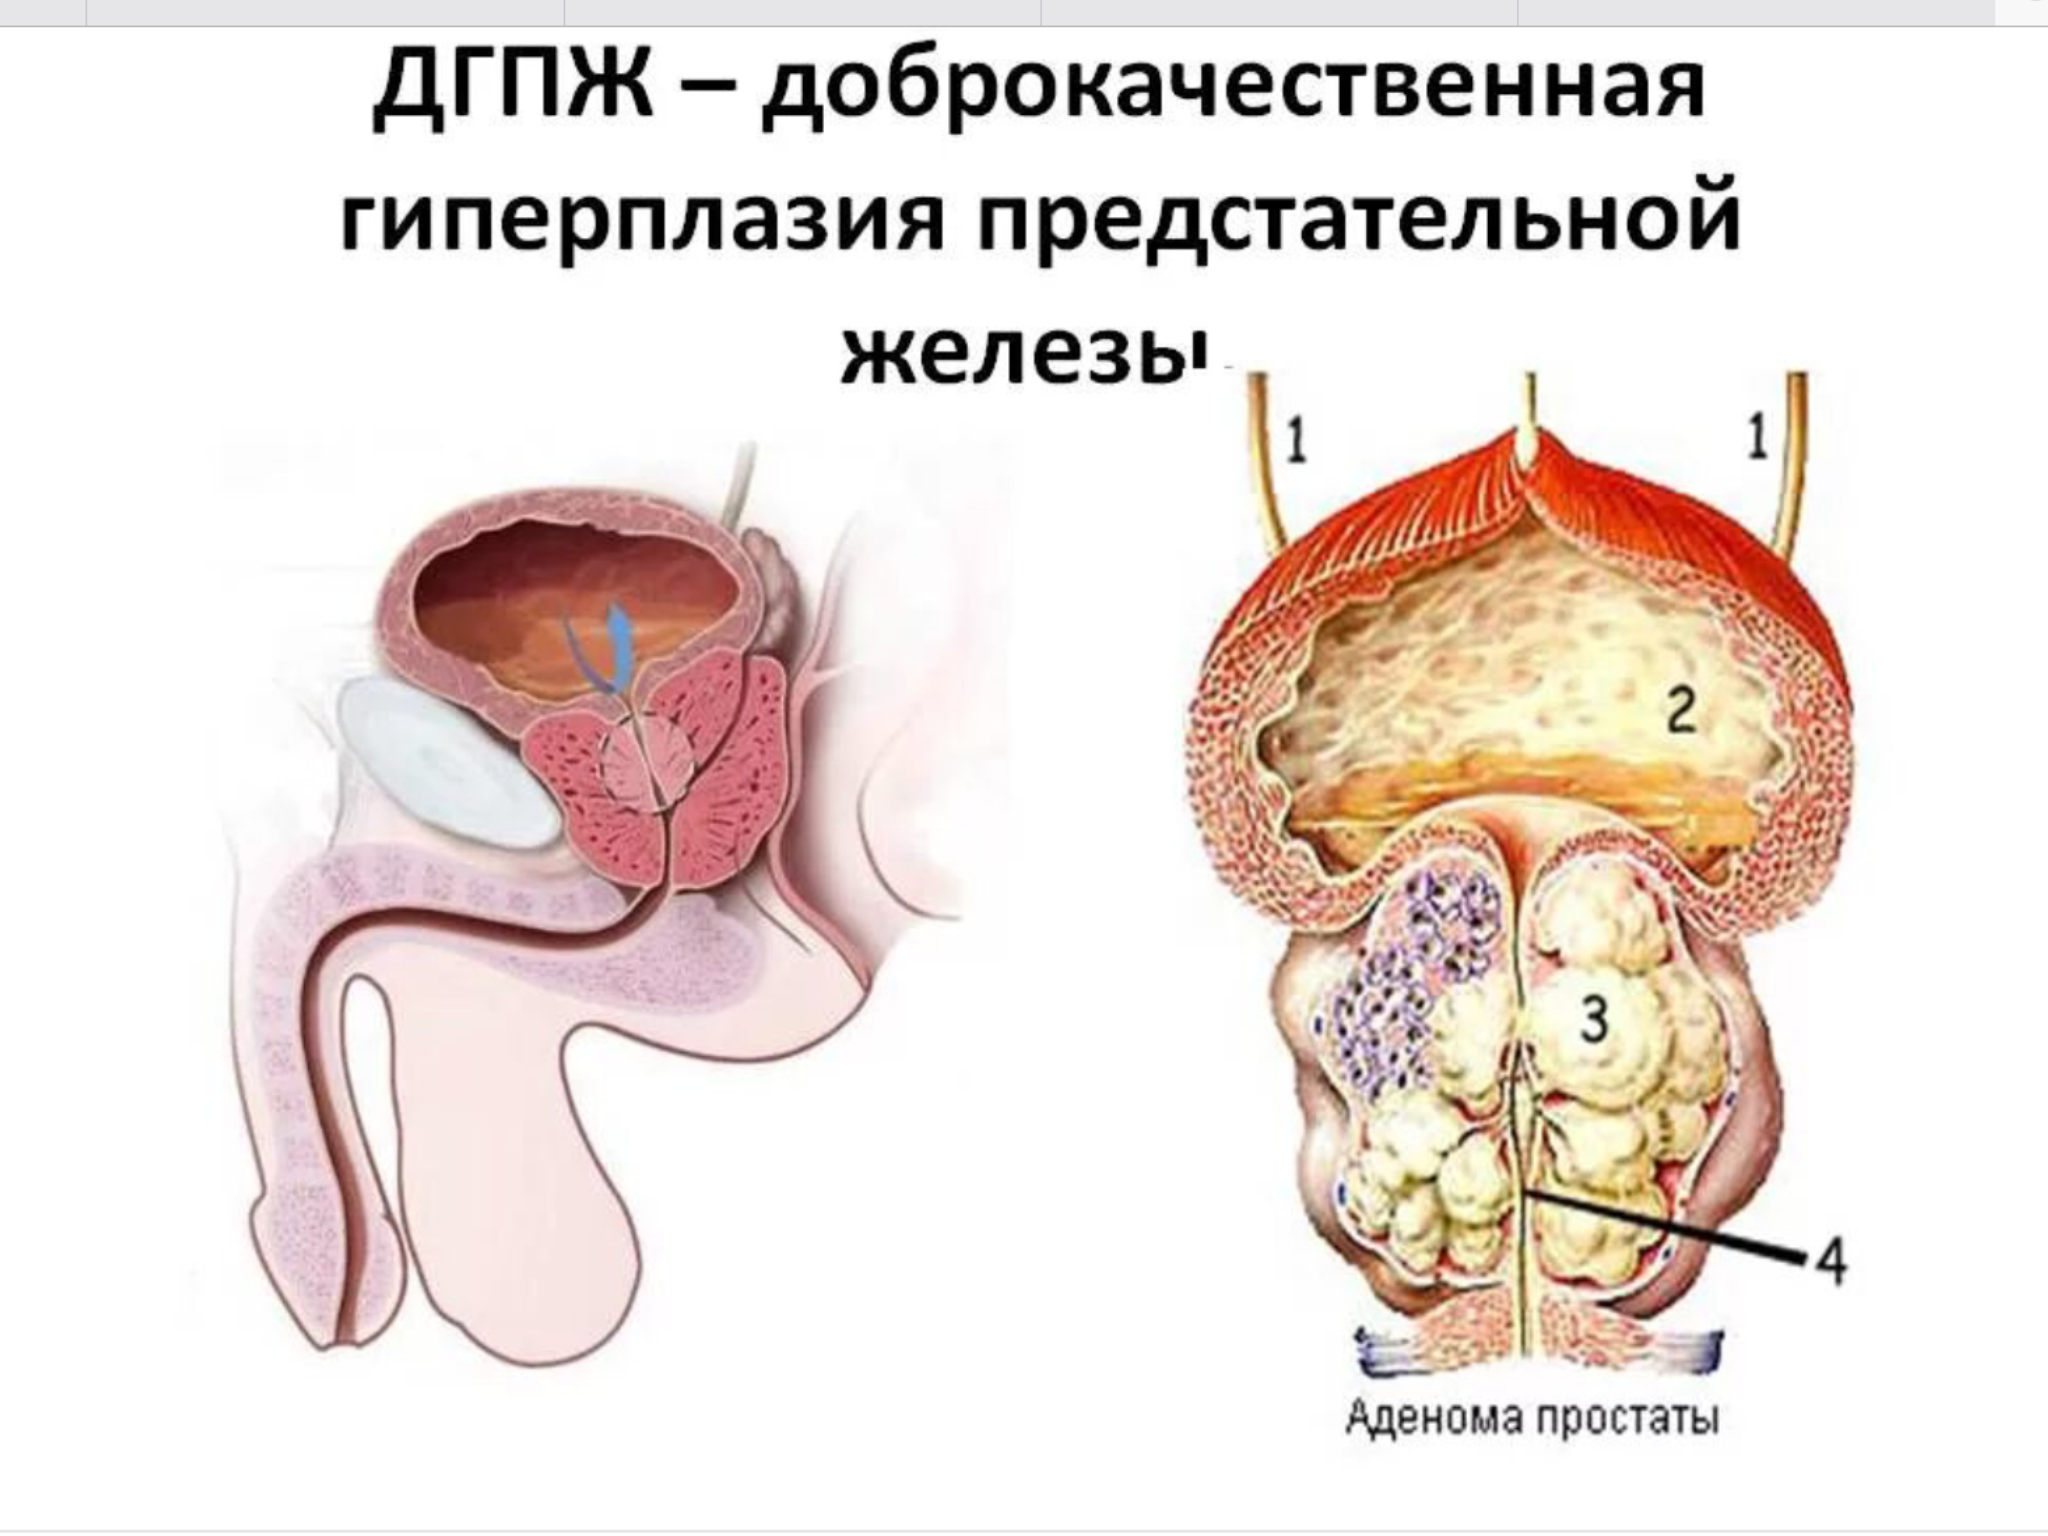 Акта простата. Аденома предстательной железы и ДГПЖ. Узловая гиперплазия предстательной железы этиология. ДГПЖ предстательной железы что это такое.